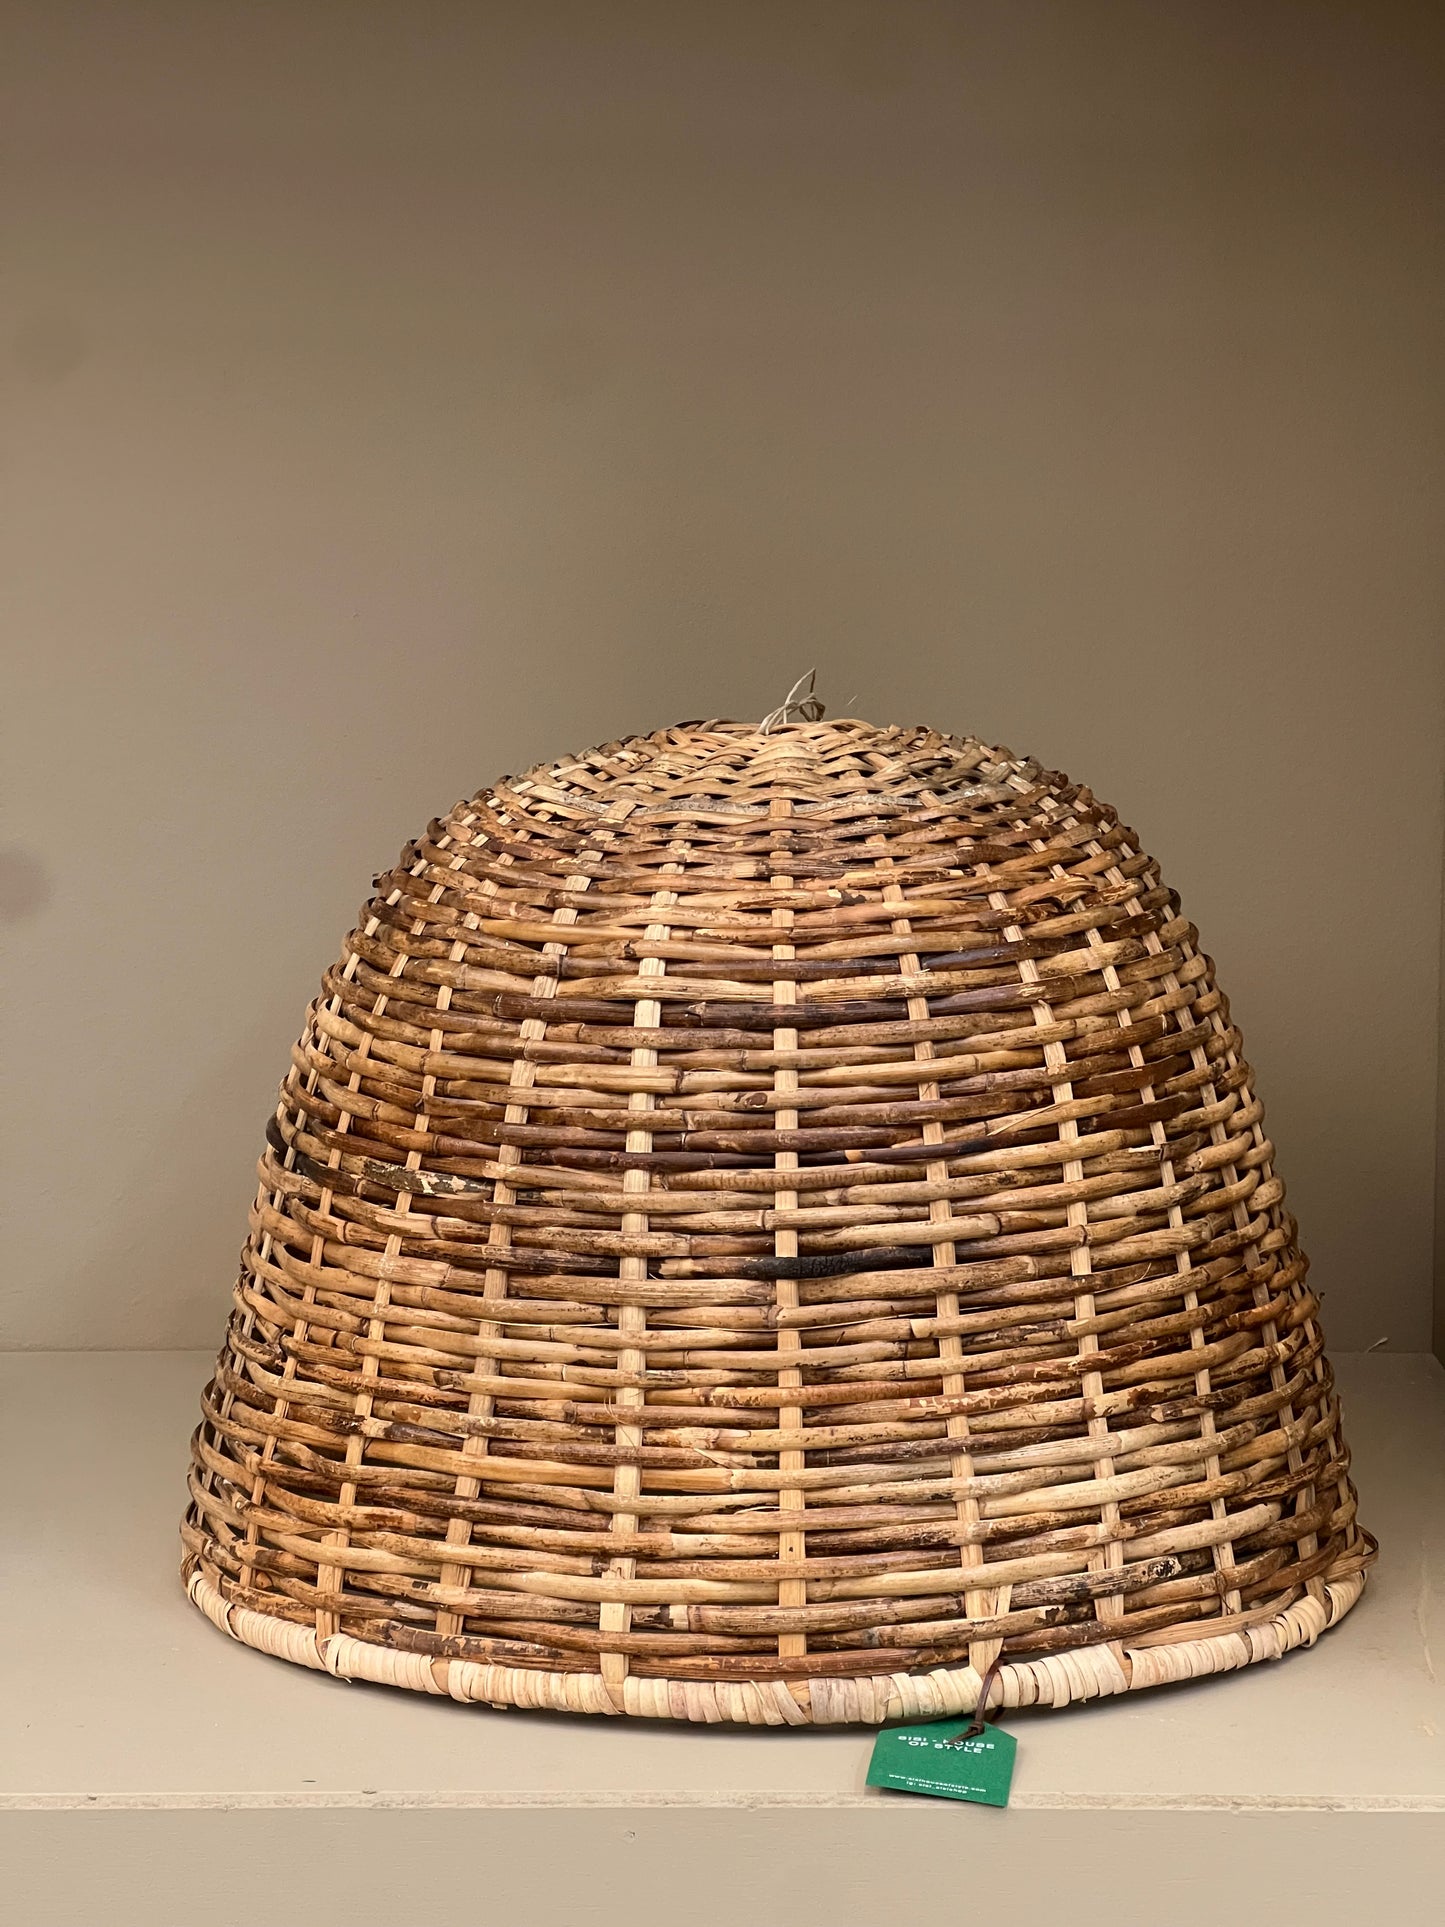 Sisi, Mushroom hat pendant light